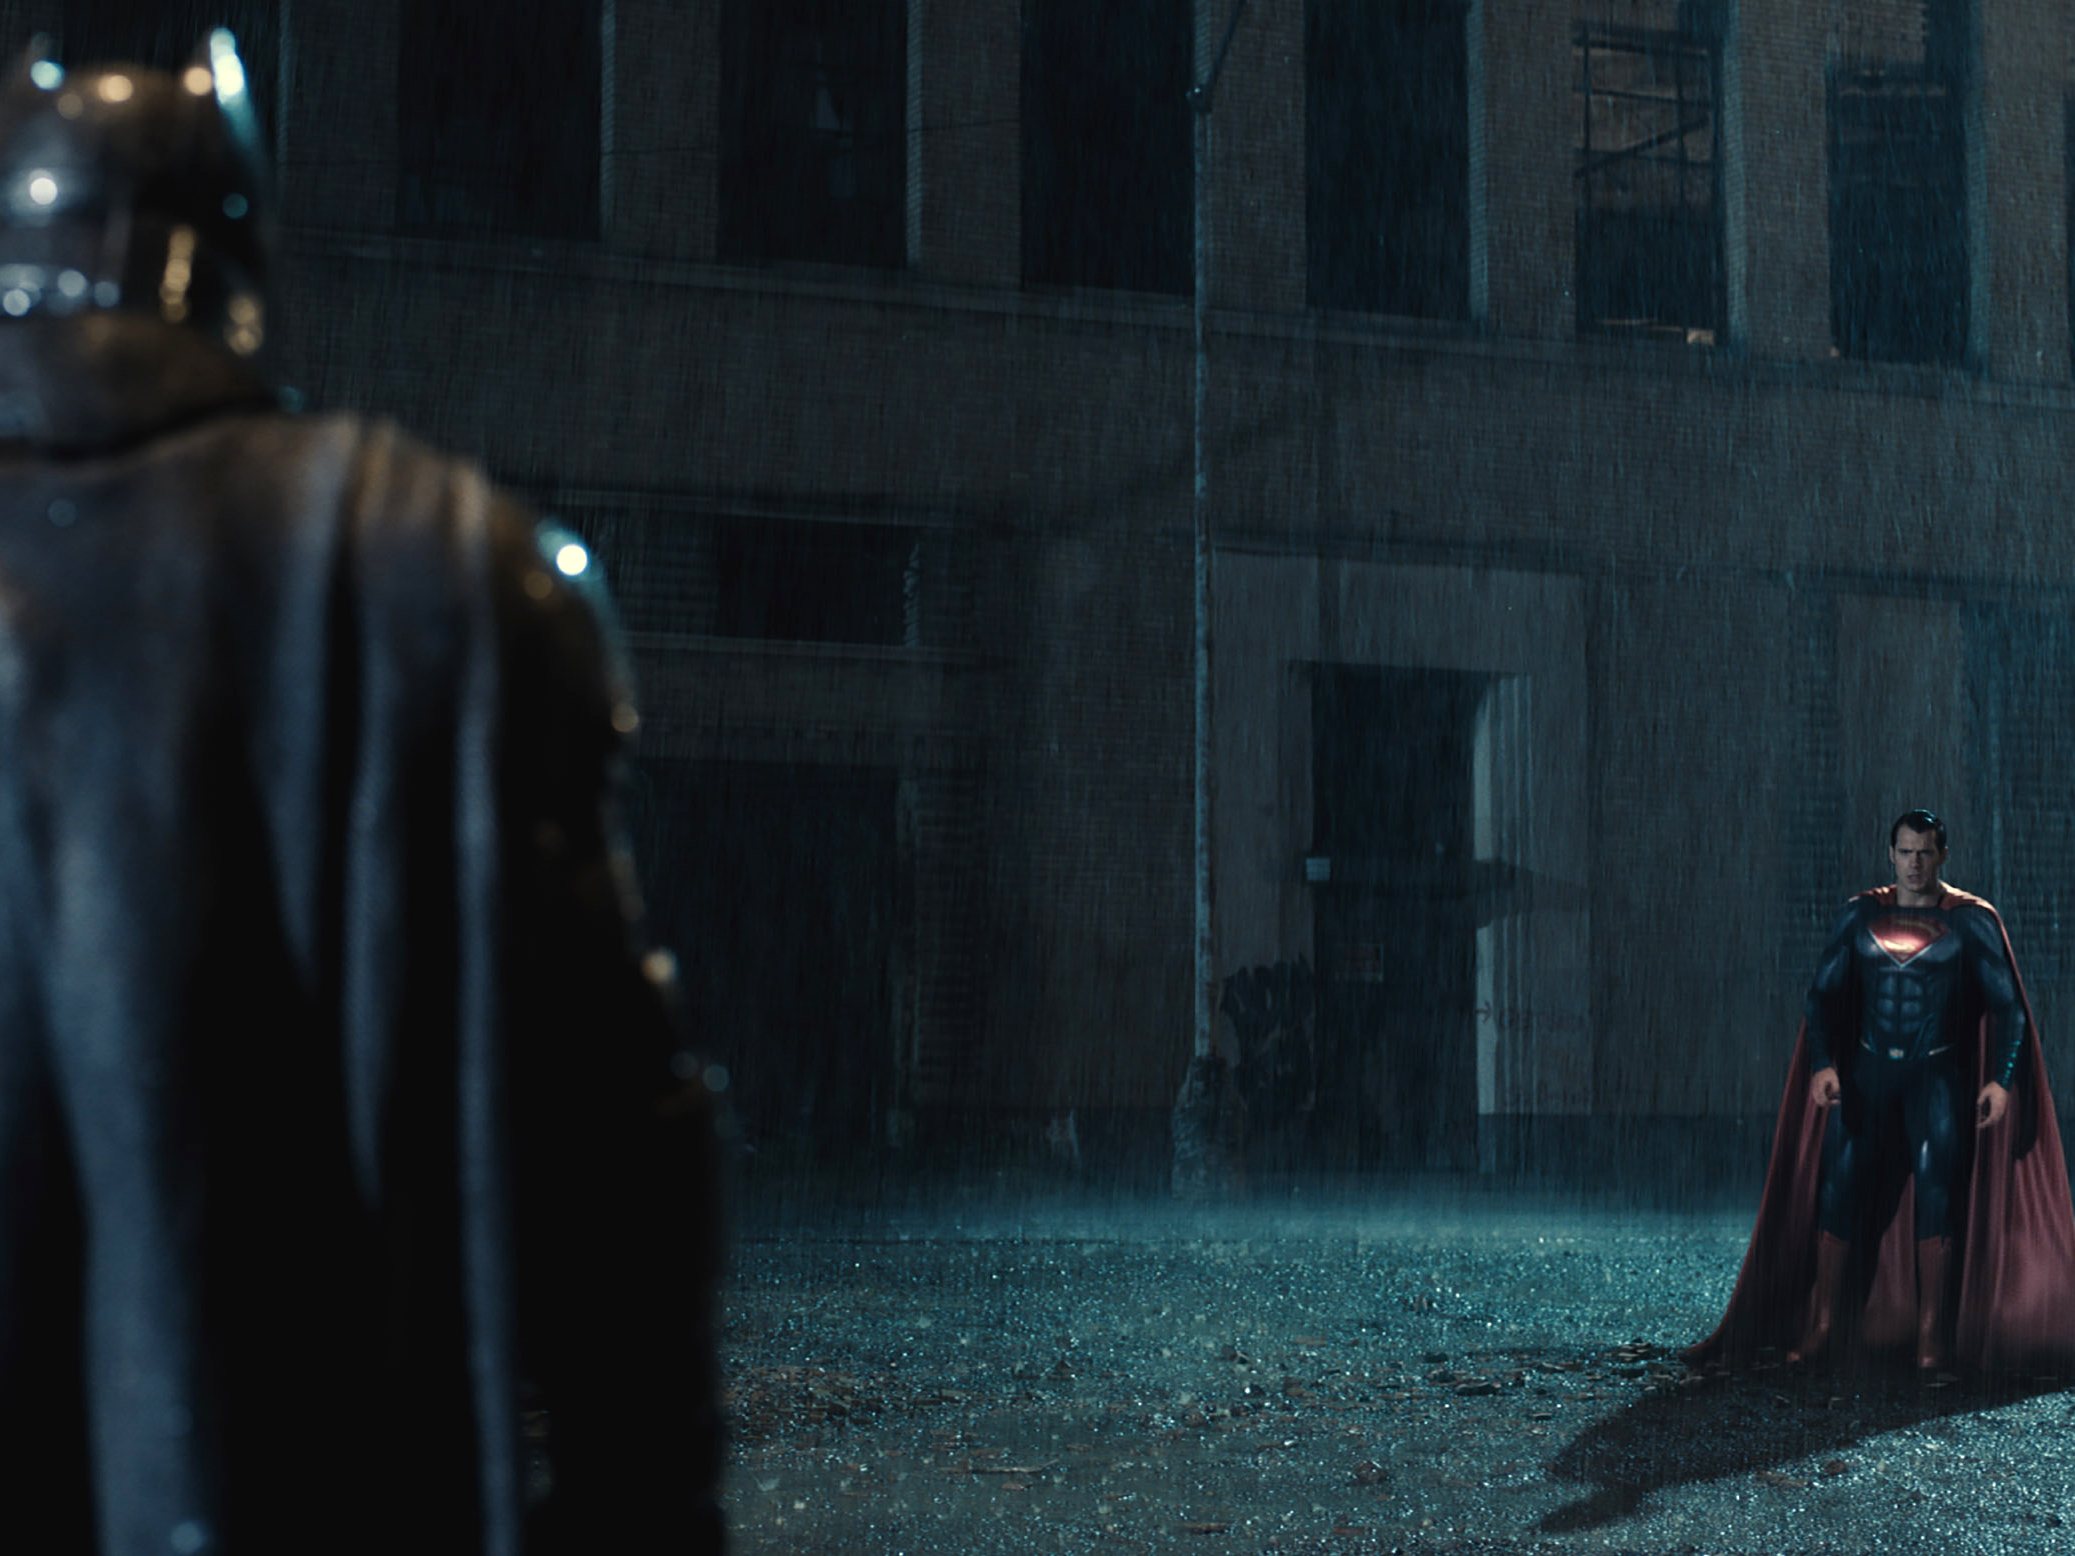 First Look At Henry Cavill As Clark Kent in 'Batman v Superman' - Dark  Knight News